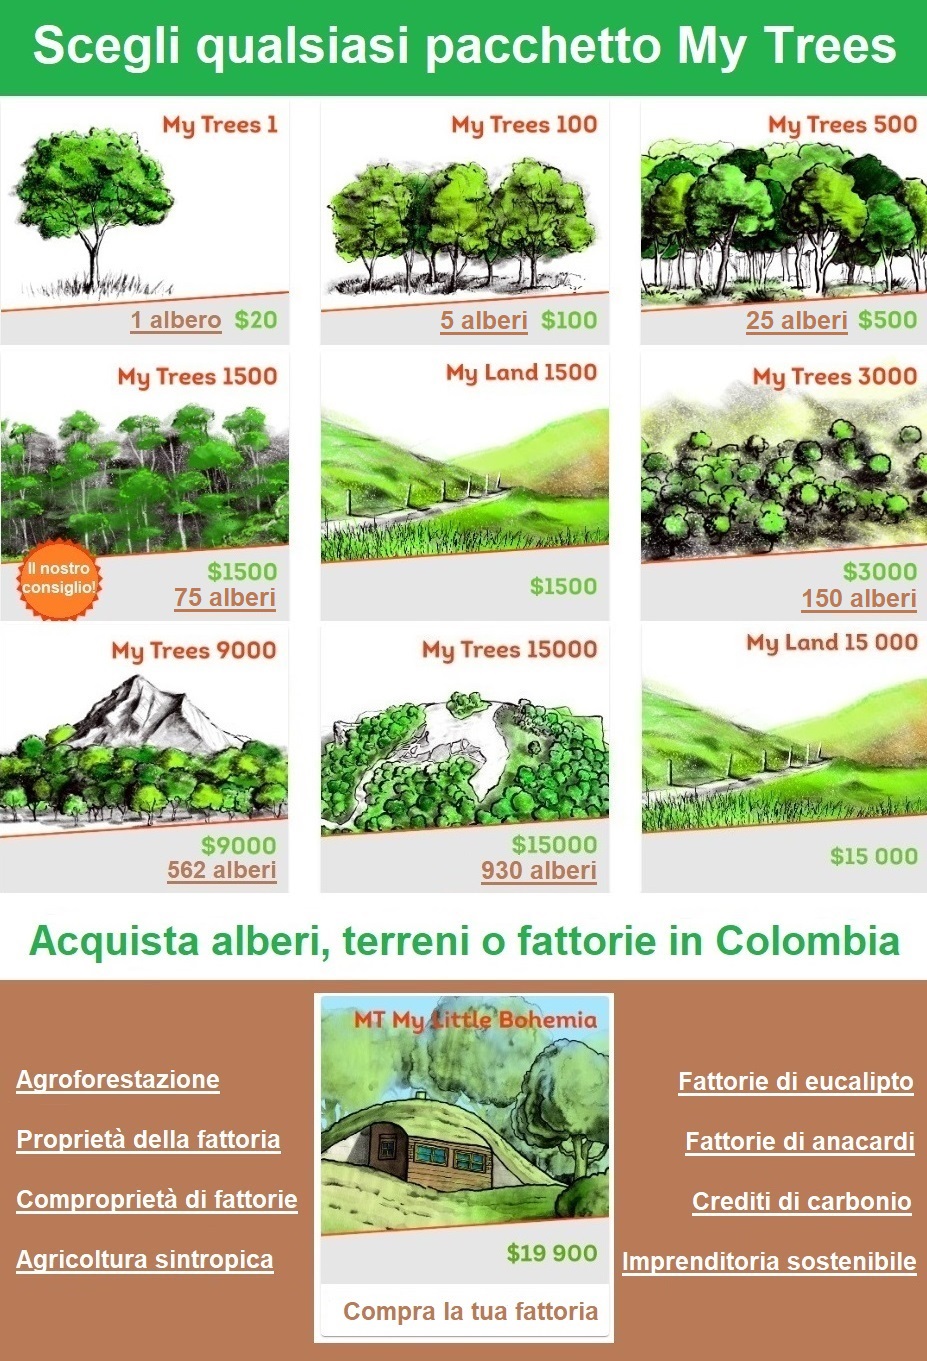 Scegli un pacchetto di investimento My Trees / Acquista alberi e terreni in Colombia. My Trees / $20 / 1 albero. My Trees 100/ $100 / 6 alberi. My Trees 500/$500/31 alberi. My Trees 1500/$1500/93 alberi. My Trees 3000/$3000/187 alberi. My Trees 9000/ $9000 / 562 alberi.